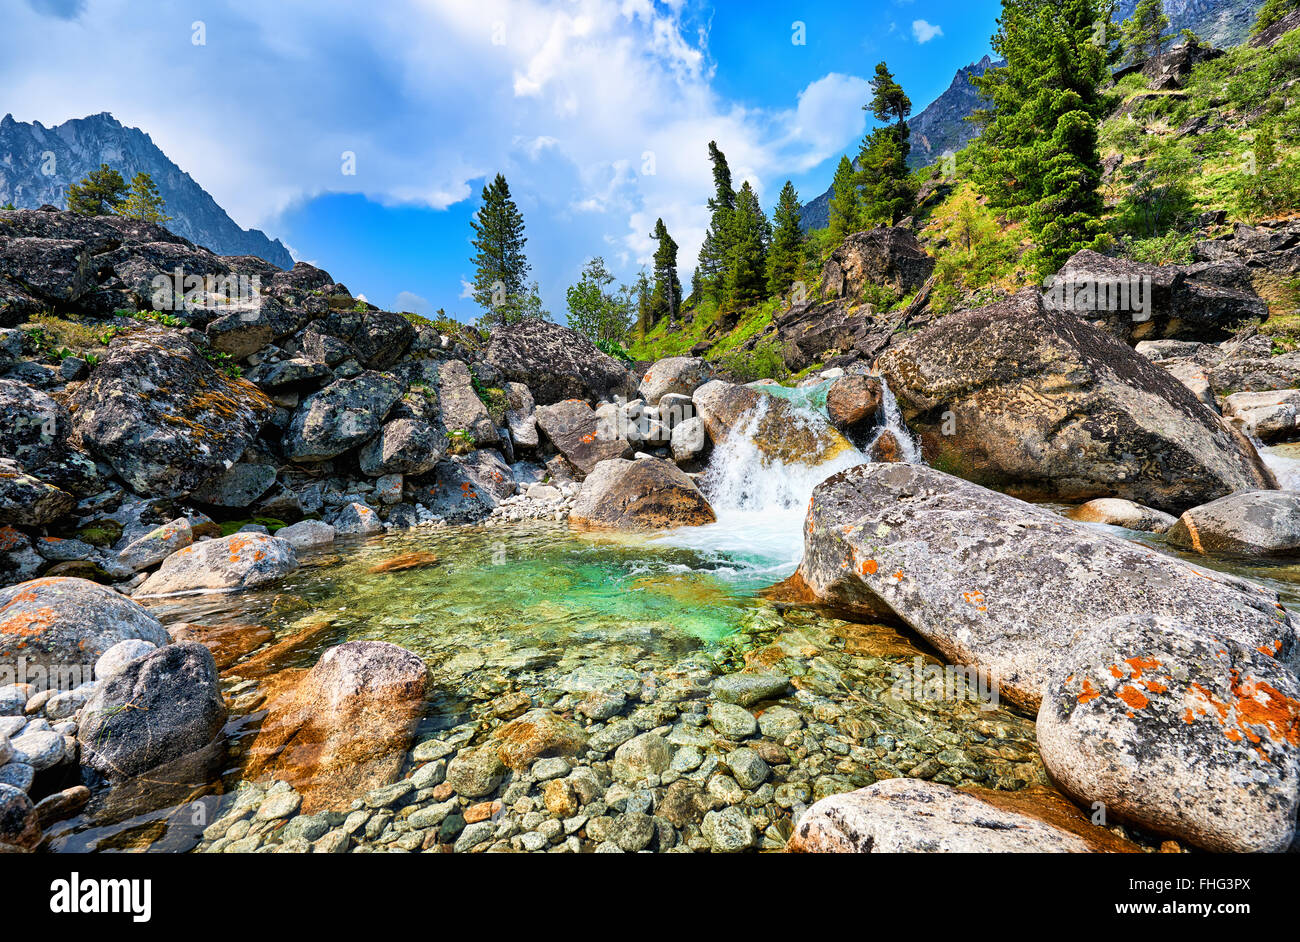 L'eau claire d'un ruisseau de montagne et une petite cascade dans un bassin naturel entre de grosses pierres . Sayan de l'Est Banque D'Images